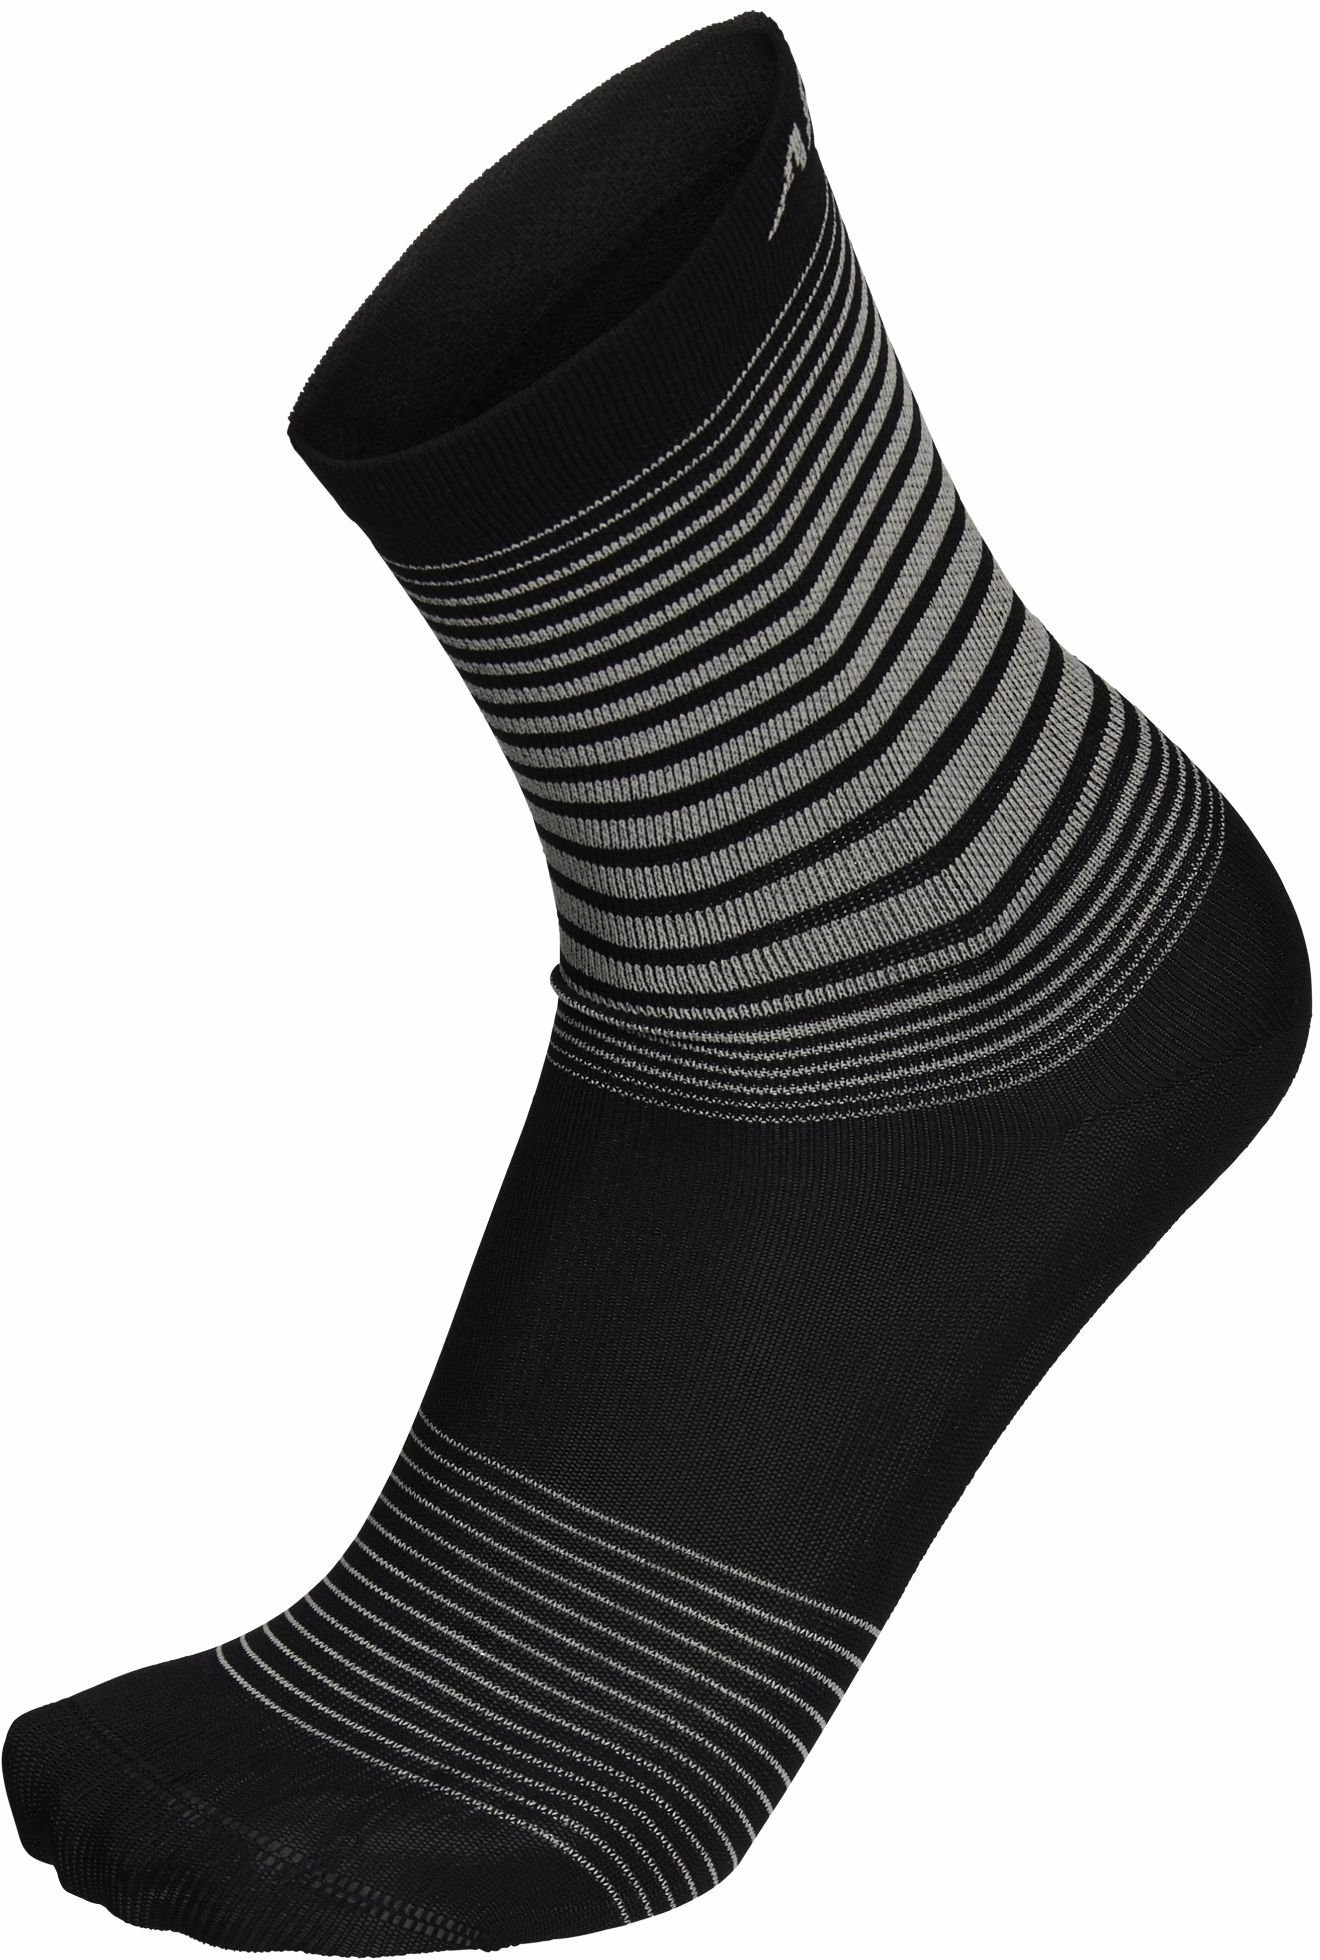 Apura Damen/Herren Socke Stripes